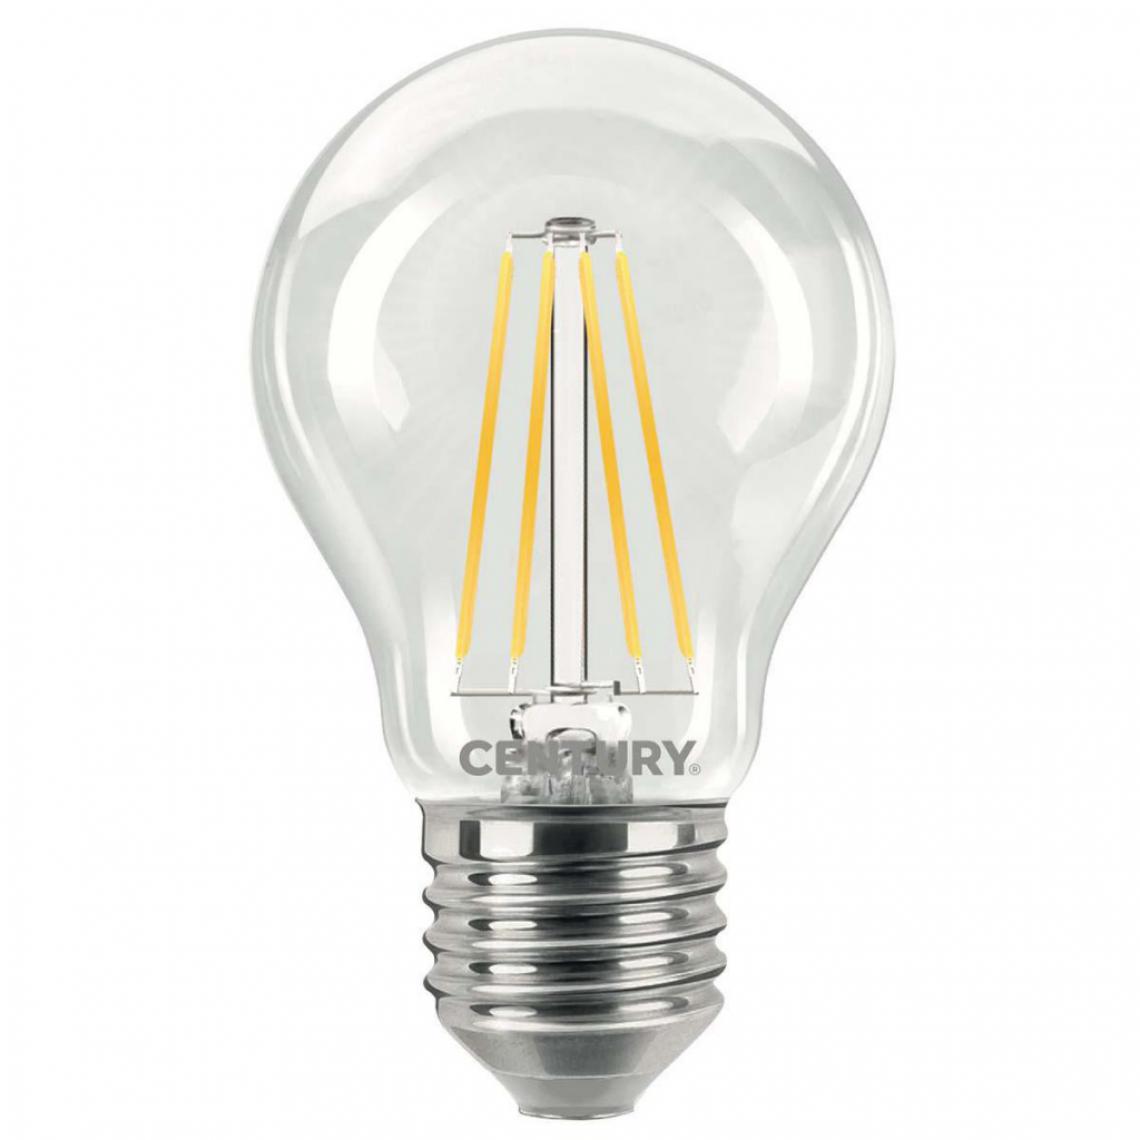 Alpexe - Ampoule LED E27 10 W 1521 lm 2700 K - Ampoules LED